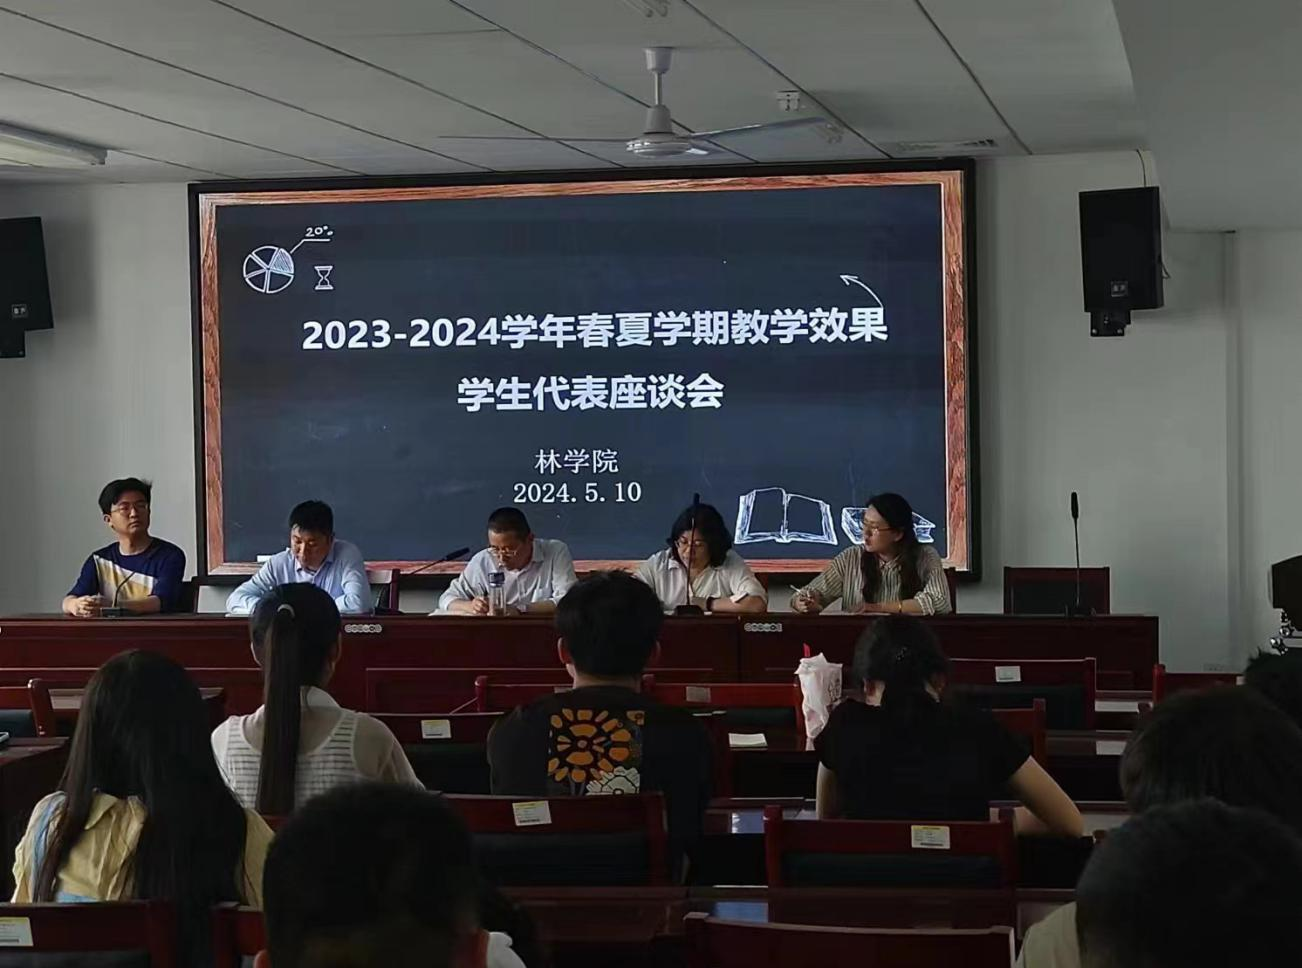 林学院 2023-2024 学年春夏学期教学效果学生代表座谈会